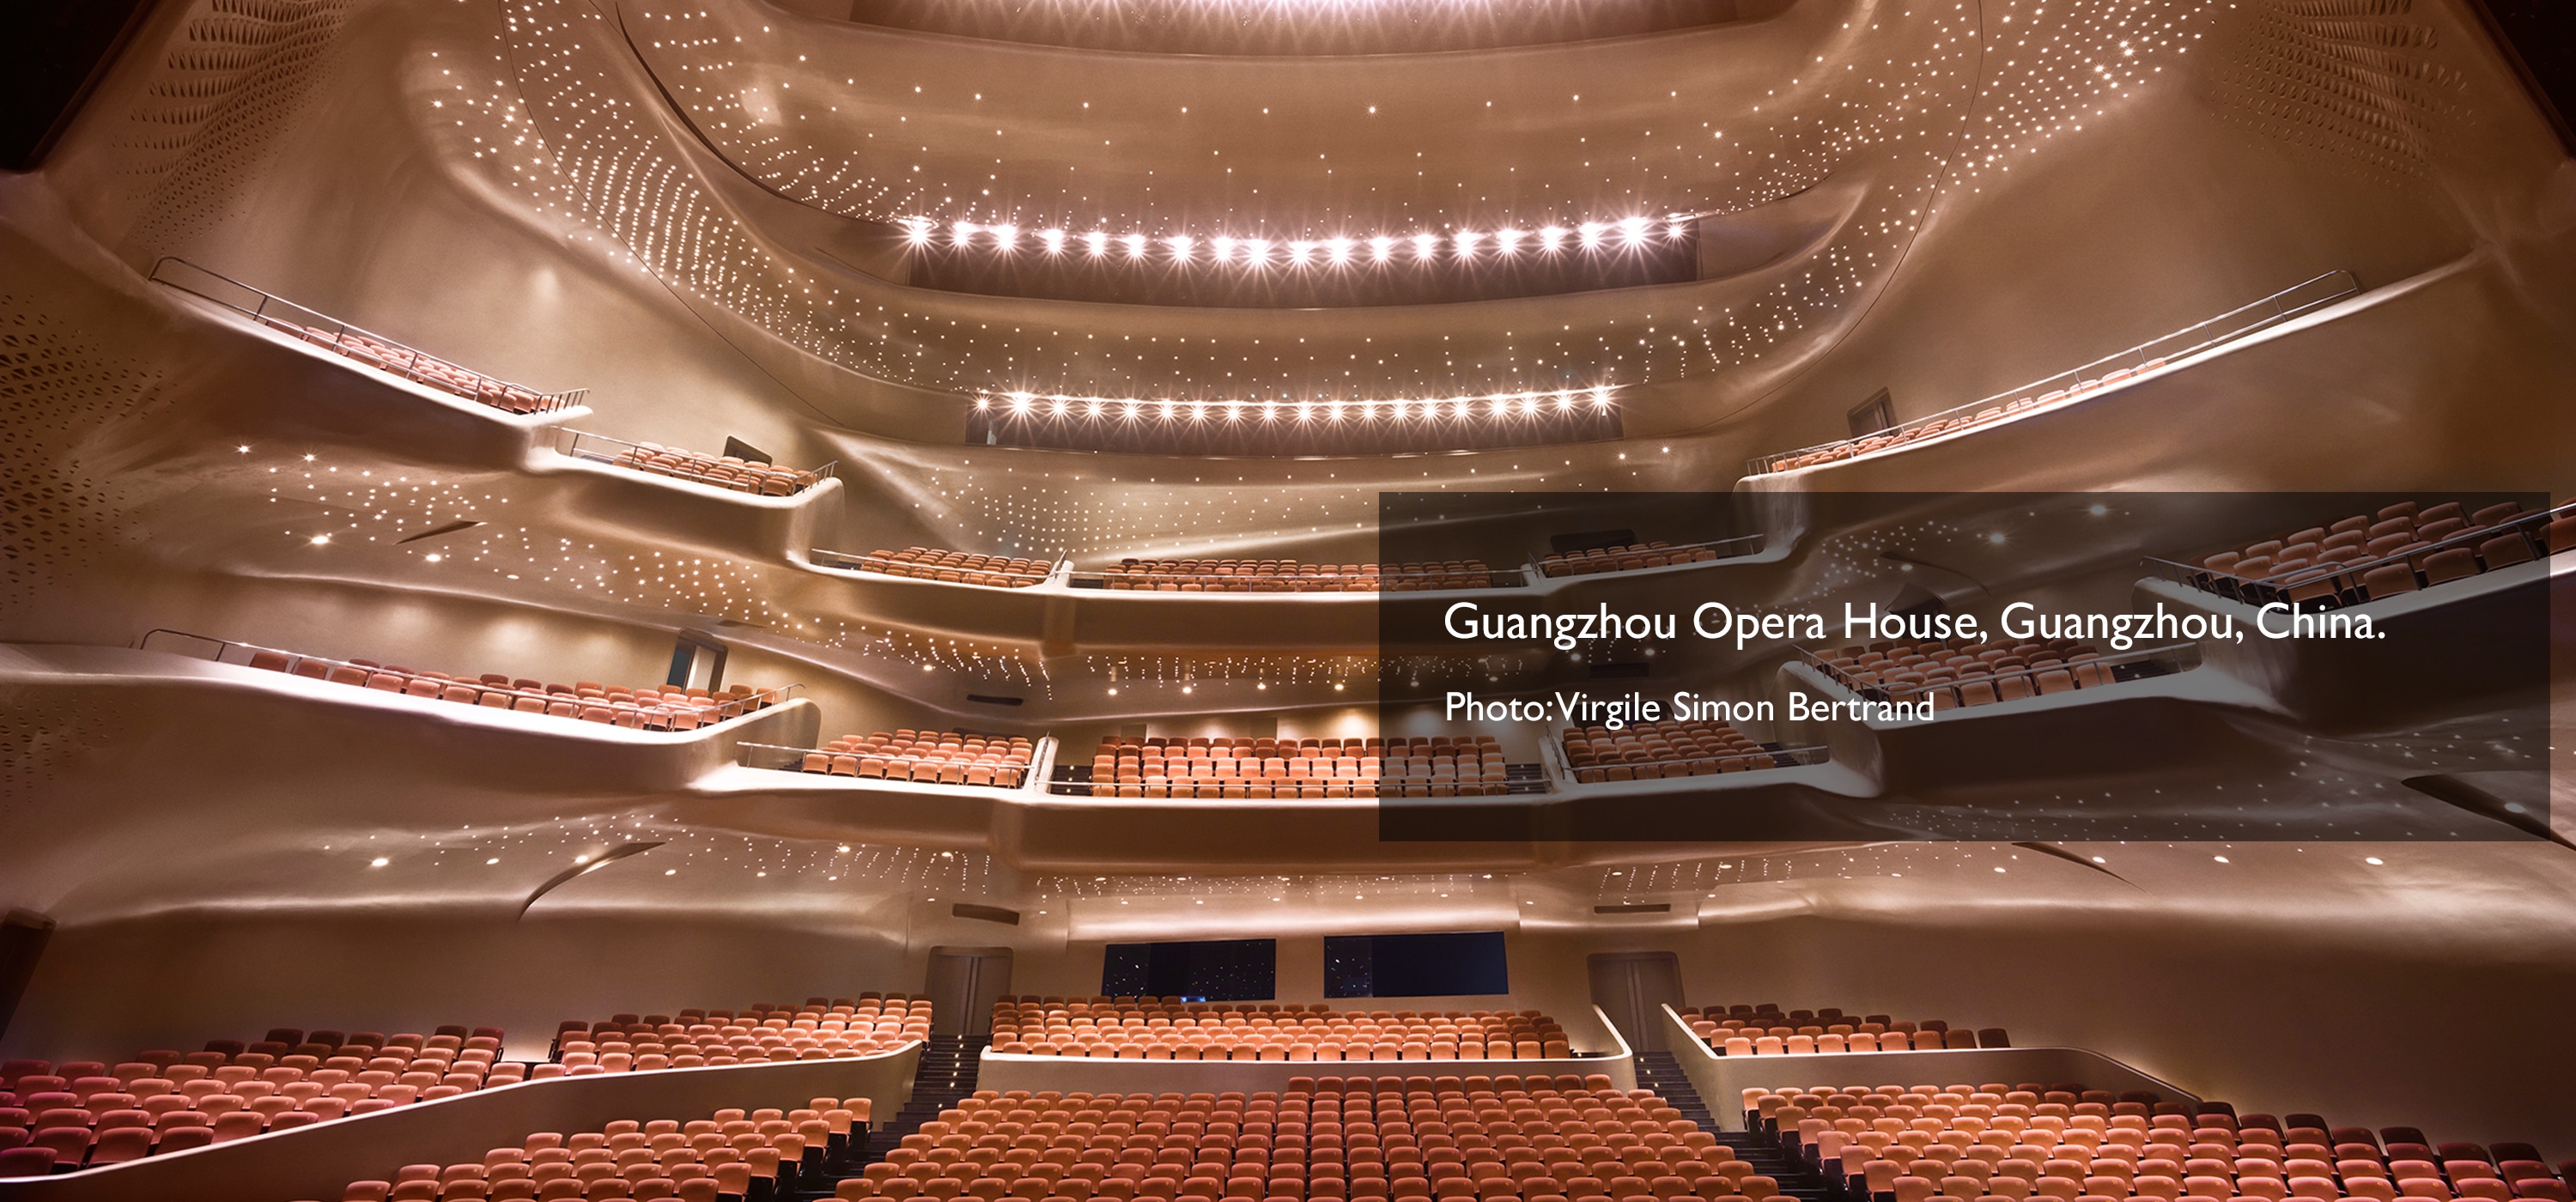 Guangzhou Opera House, Guangzhou, China. Photo: Virgile Simon Bertrand